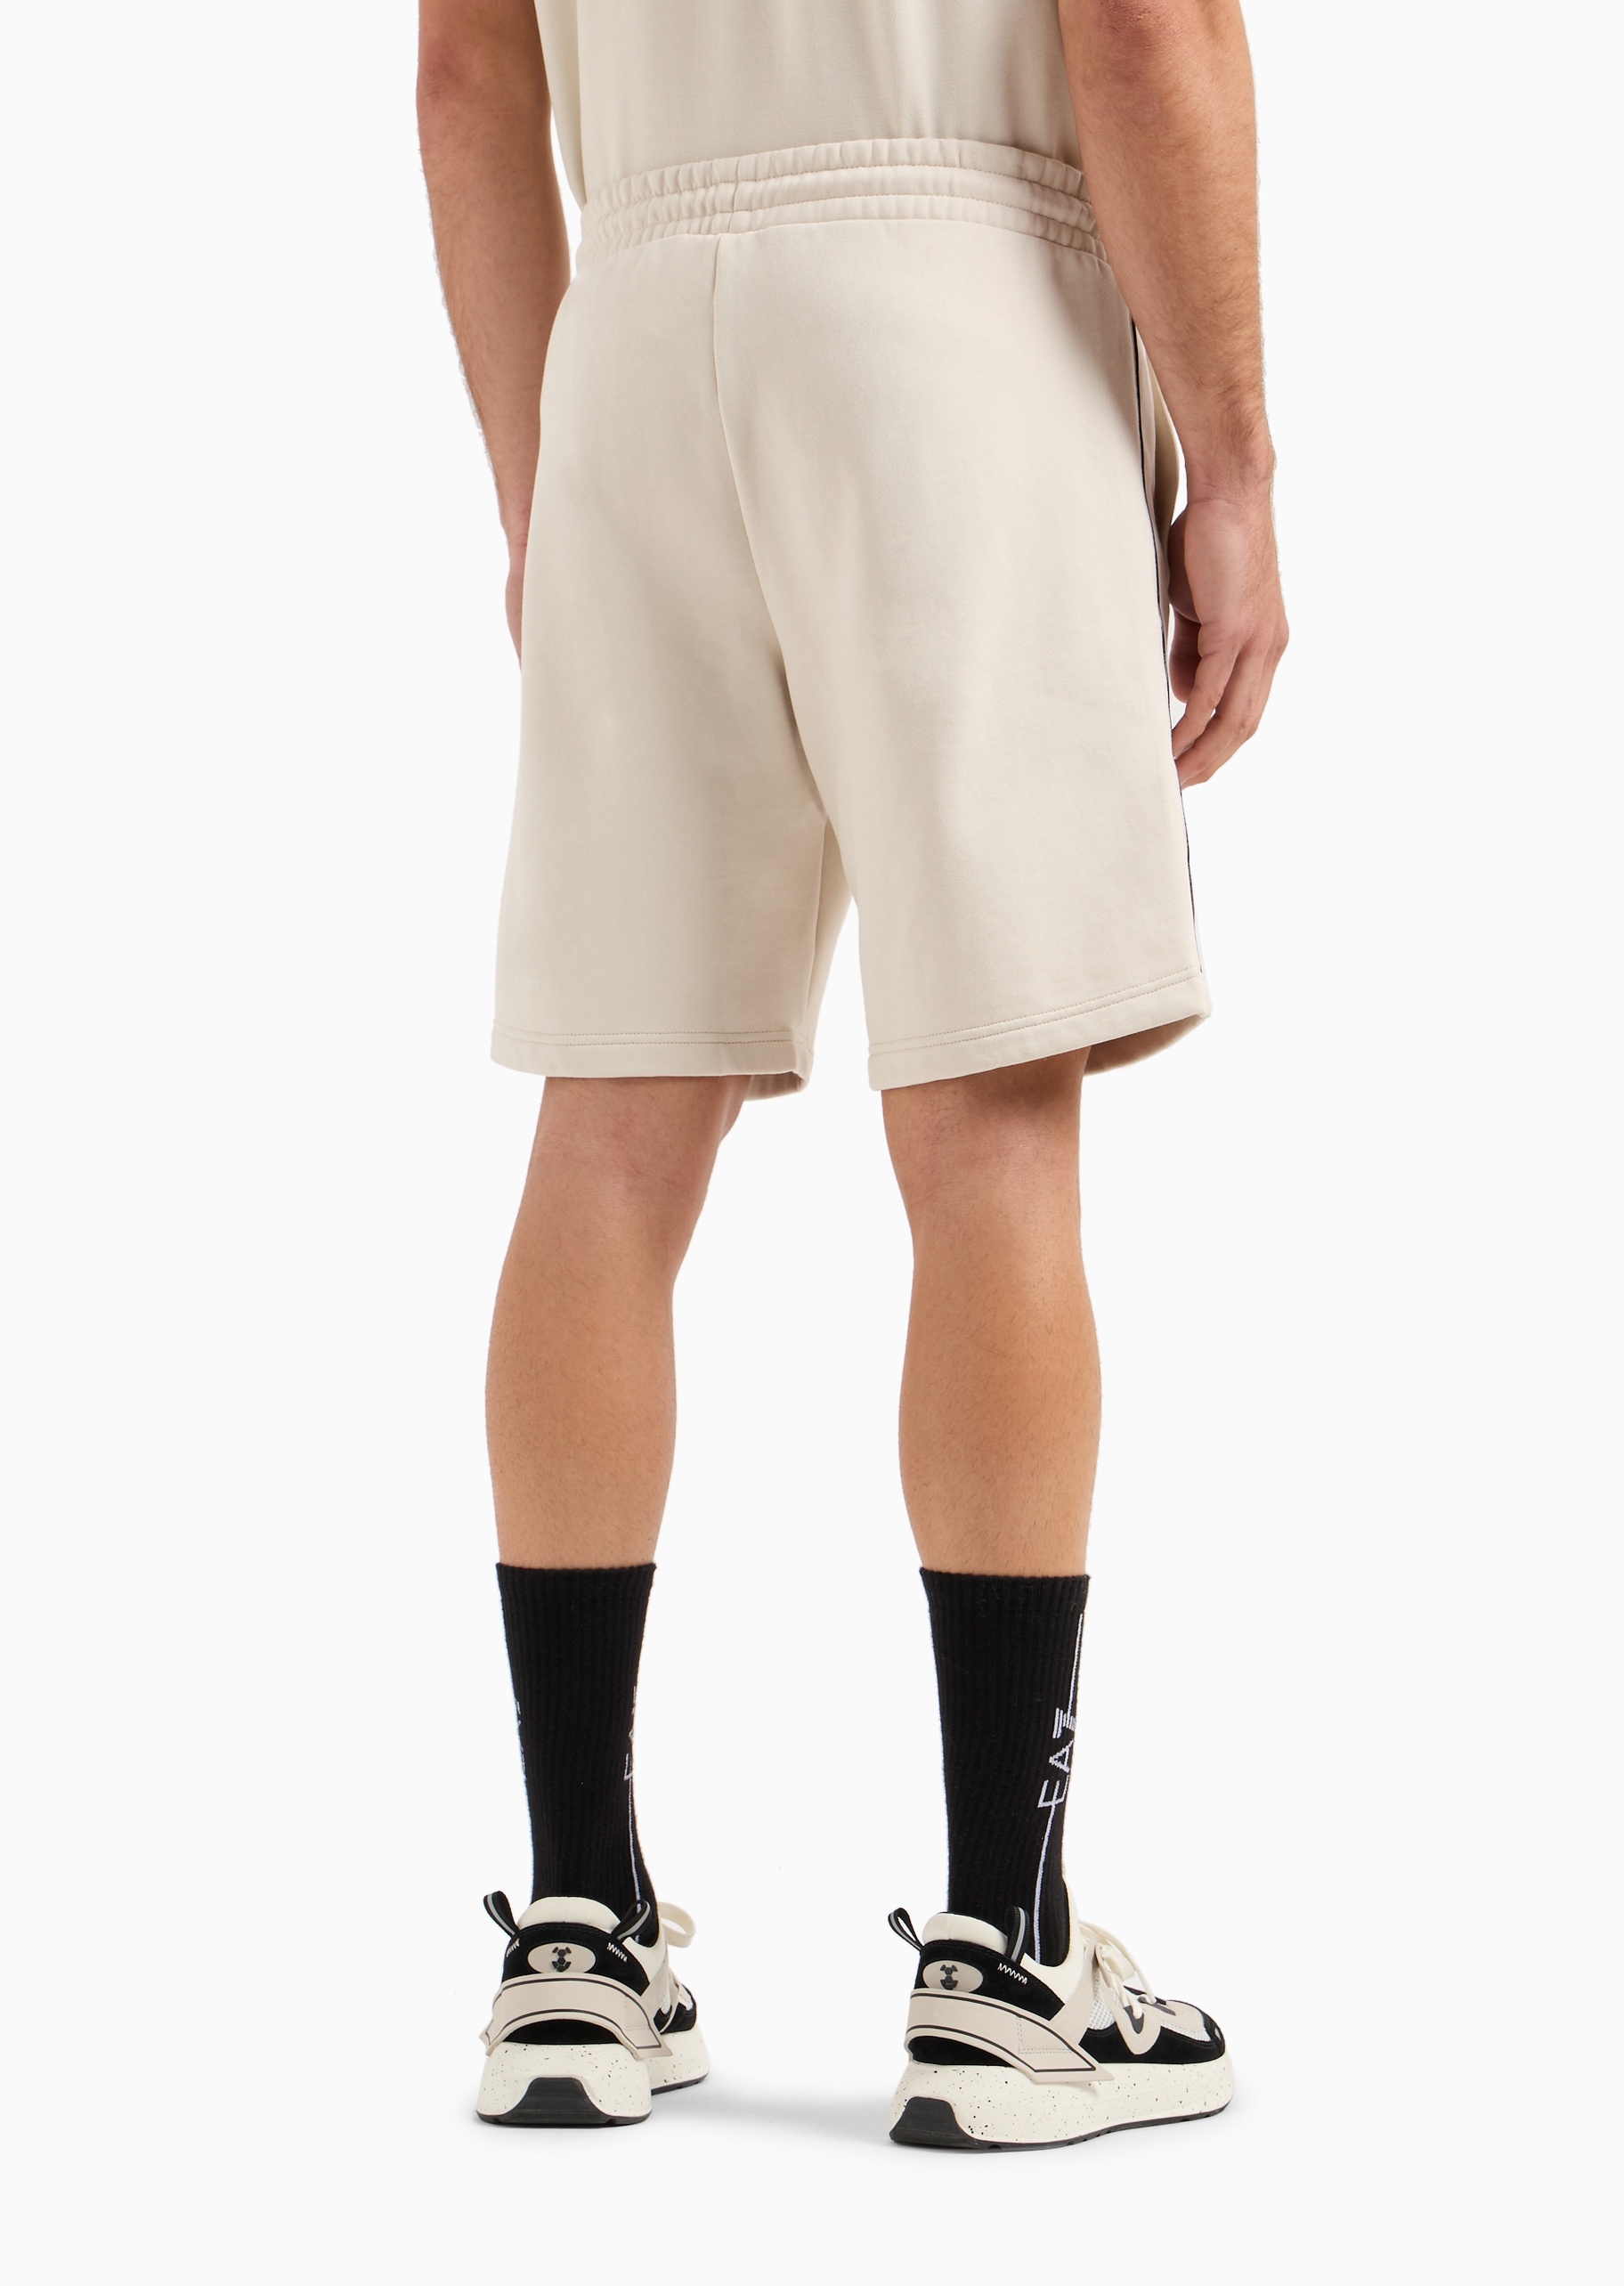 EA7 男士棉质合身系带腰短款纯色运动短裤